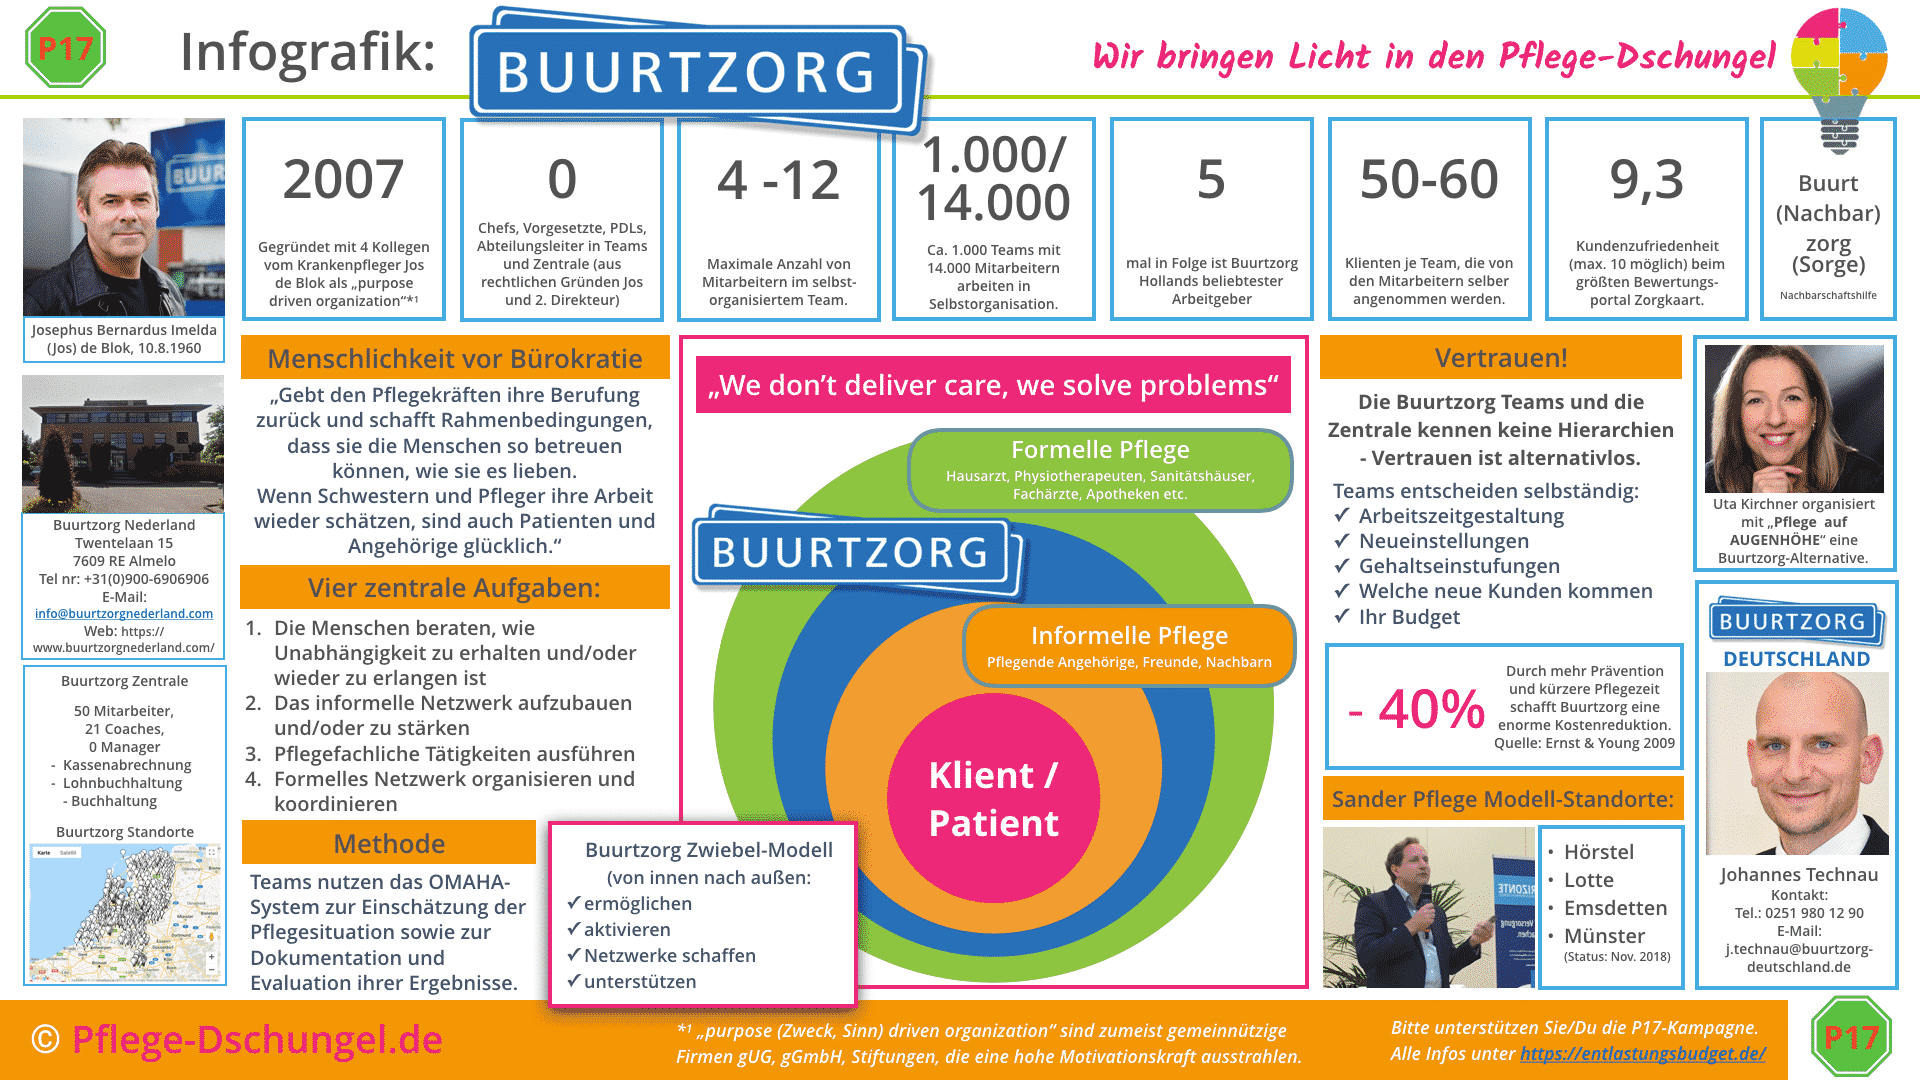 Infografik  Buurtzorg - Niederländisches Pflege System Buurtzorg aus Holland kommt nach Deutschland